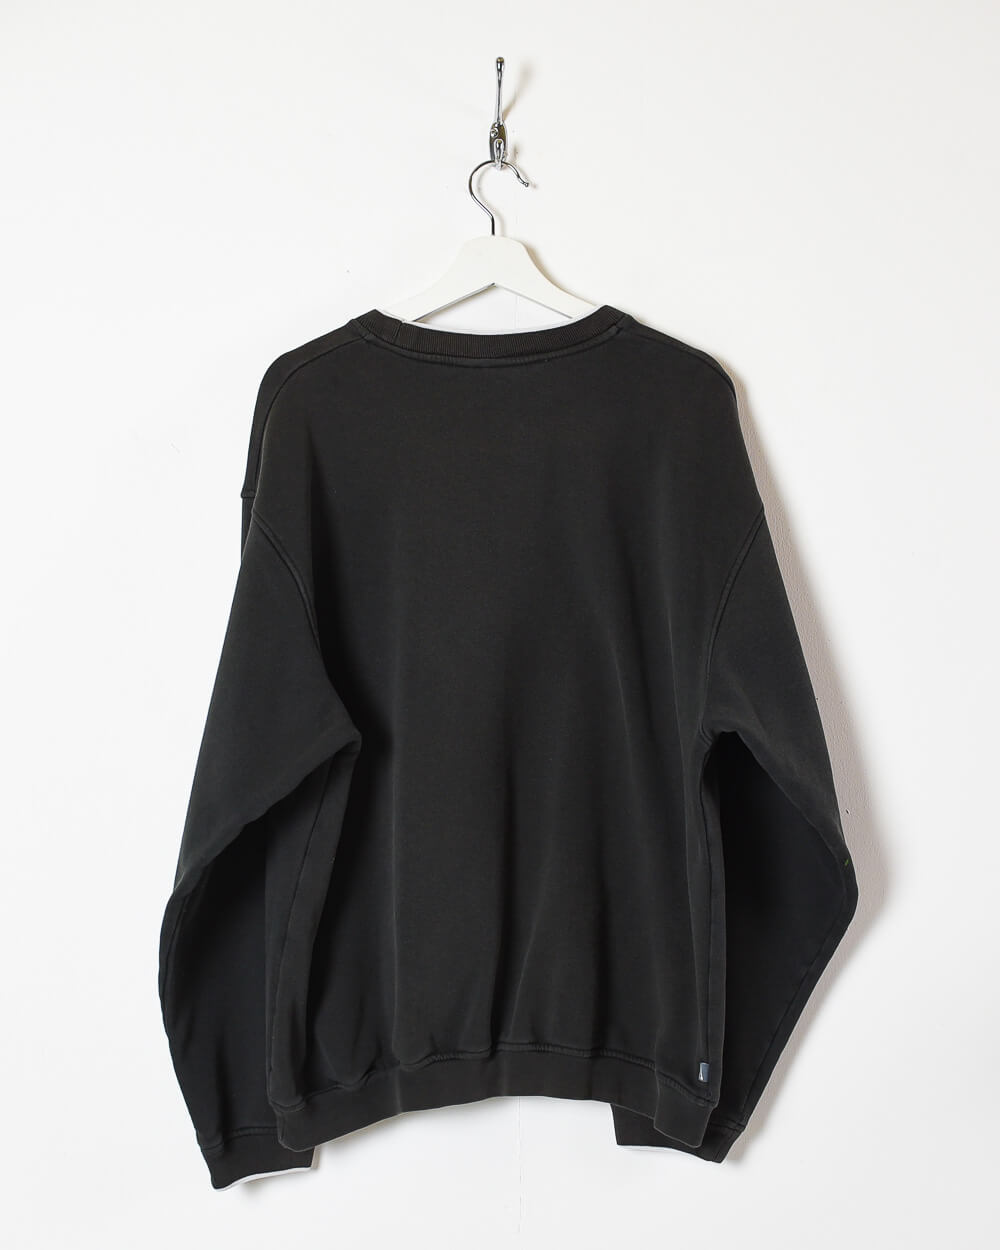 Black Nike Athletic Sweatshirt - X-Large